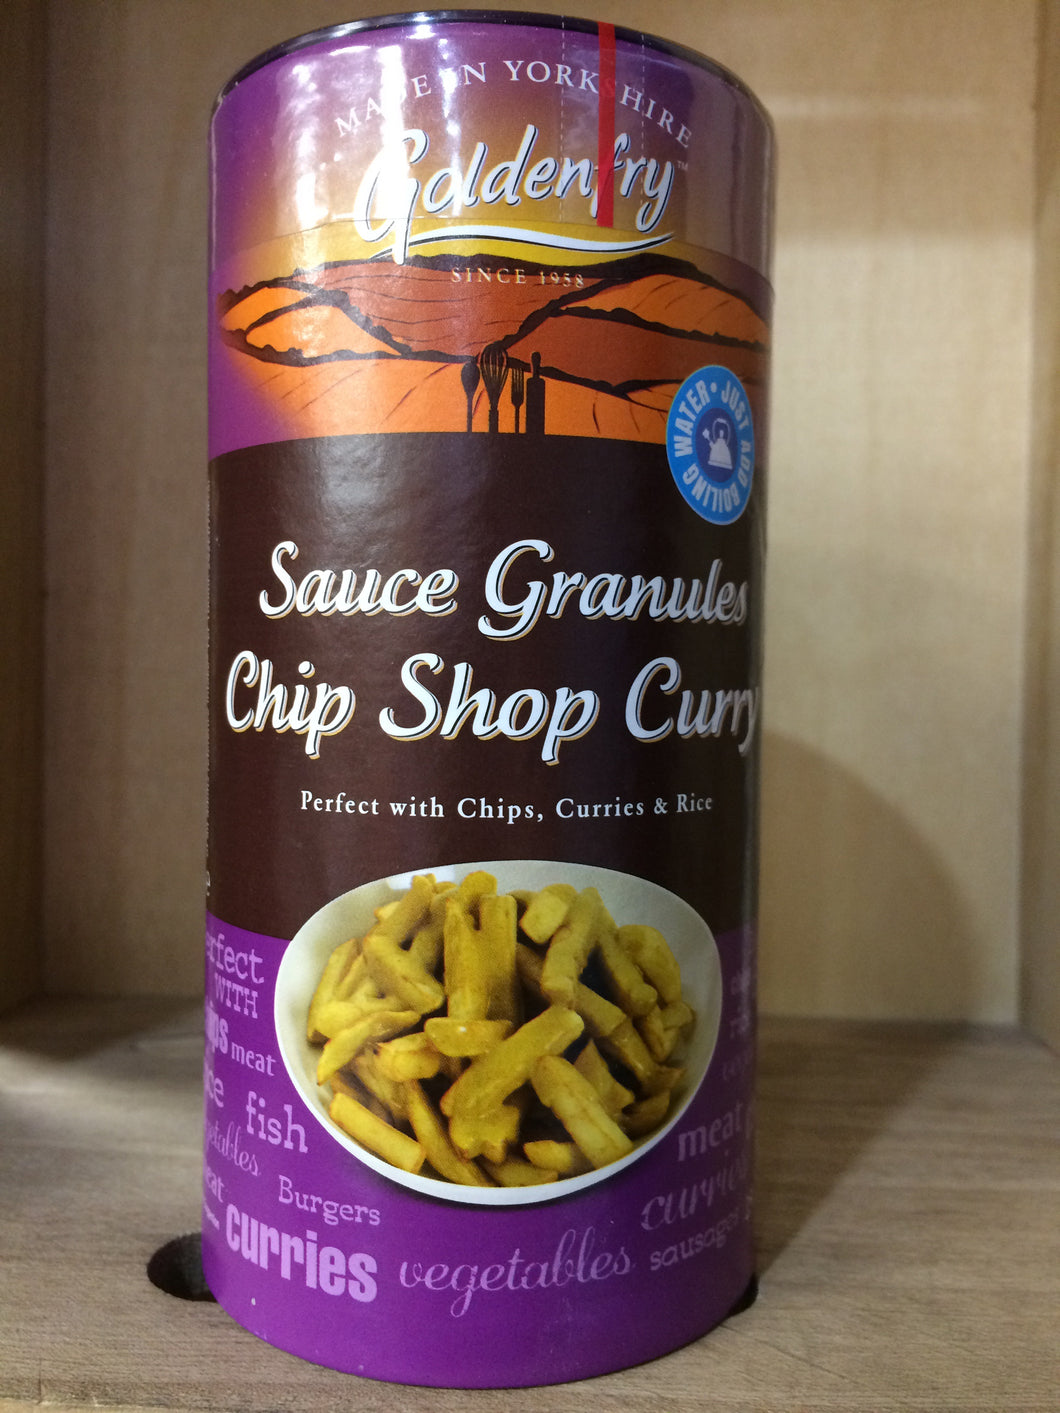 Golden fry Chip Shop Curry Sauce Granules 250g